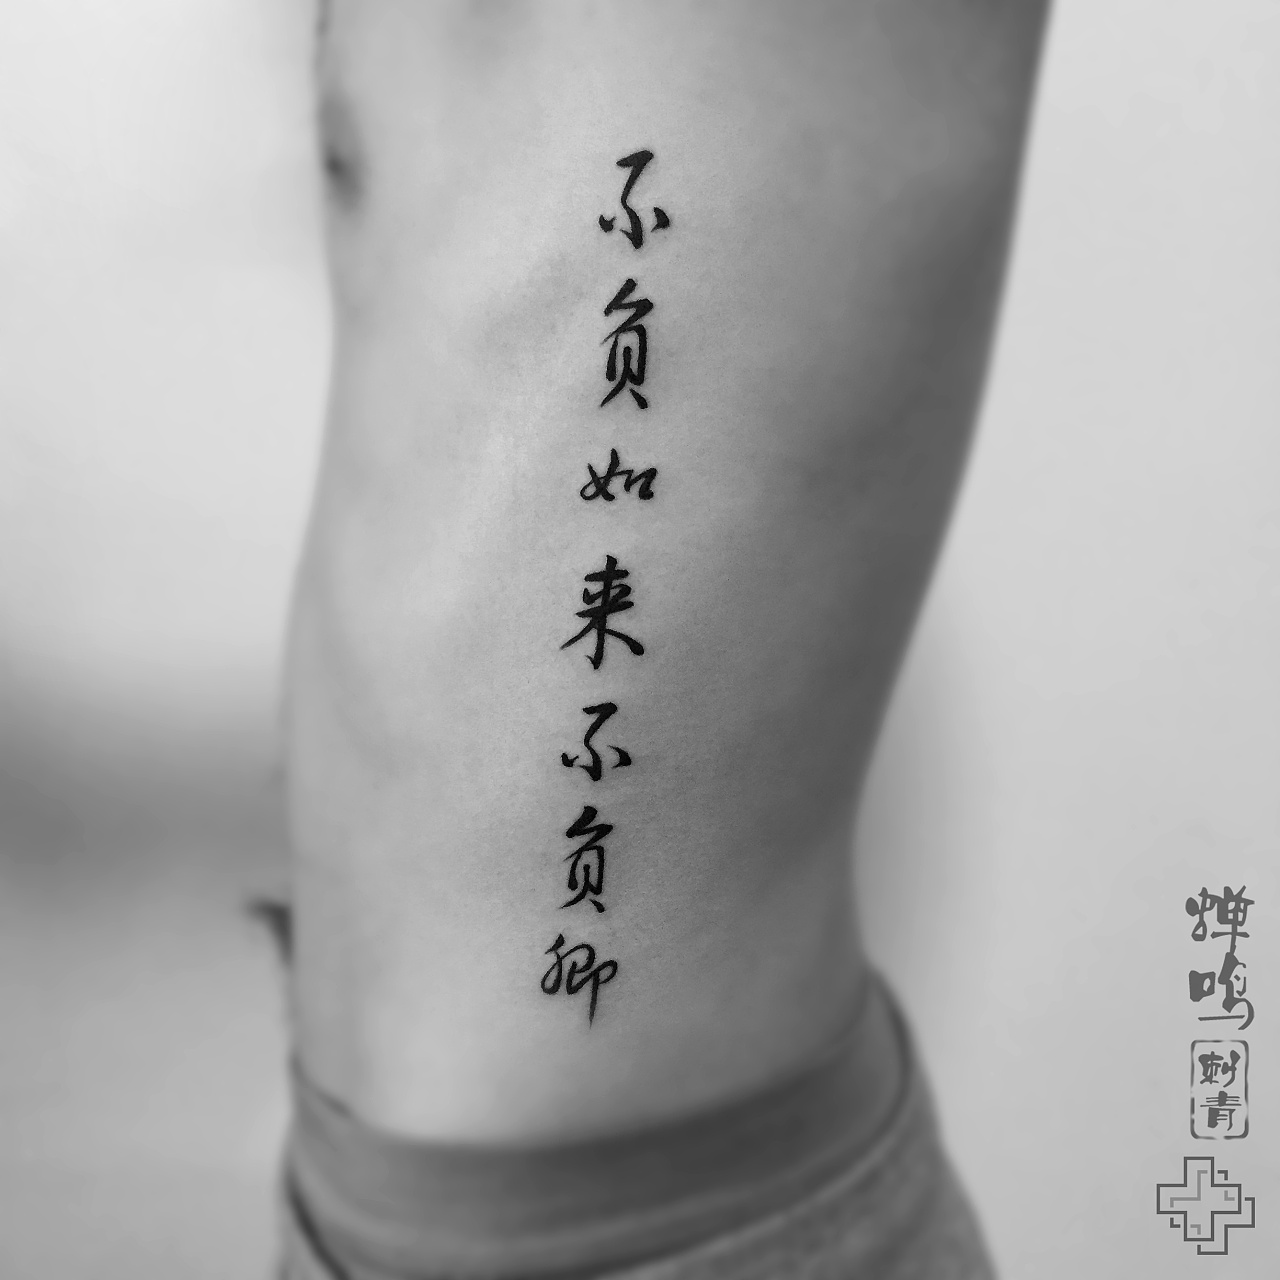 卢先生小腿奇卡诺花体字纹身图案 - 广州纹彩刺青